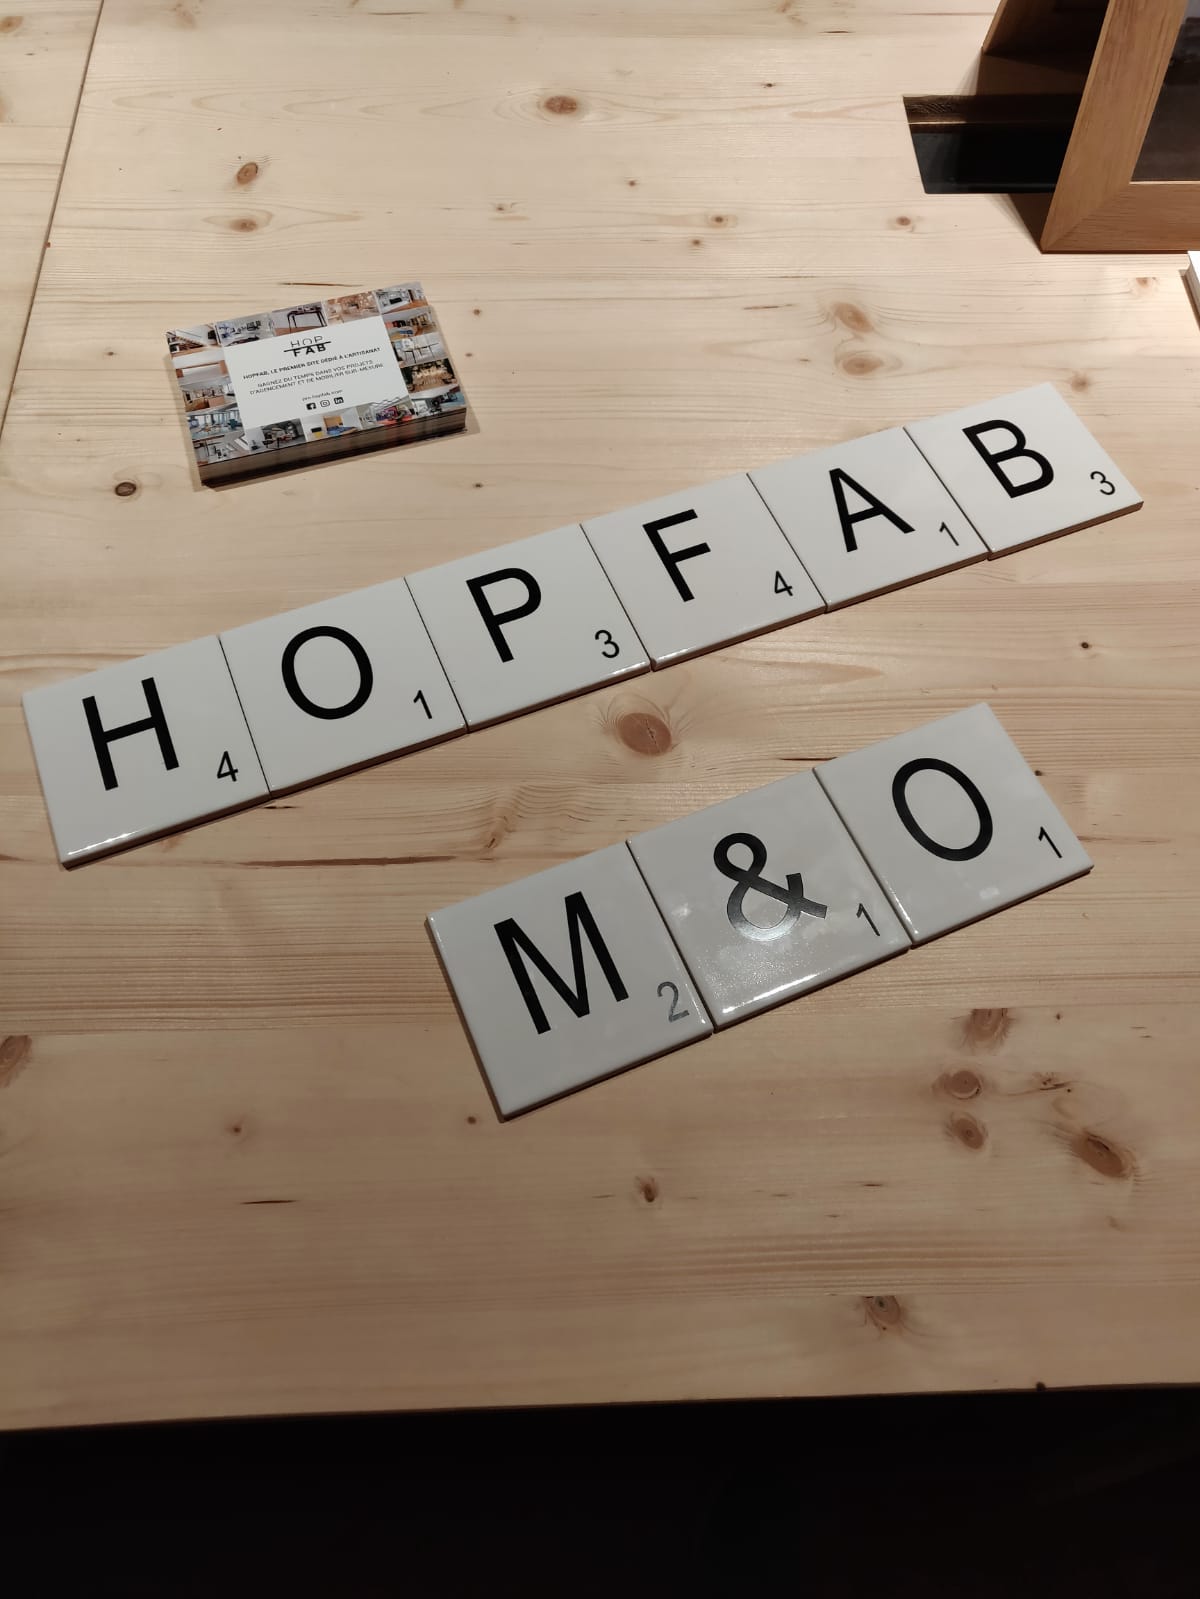 Hopfab invite Continuum à Maison & Objet